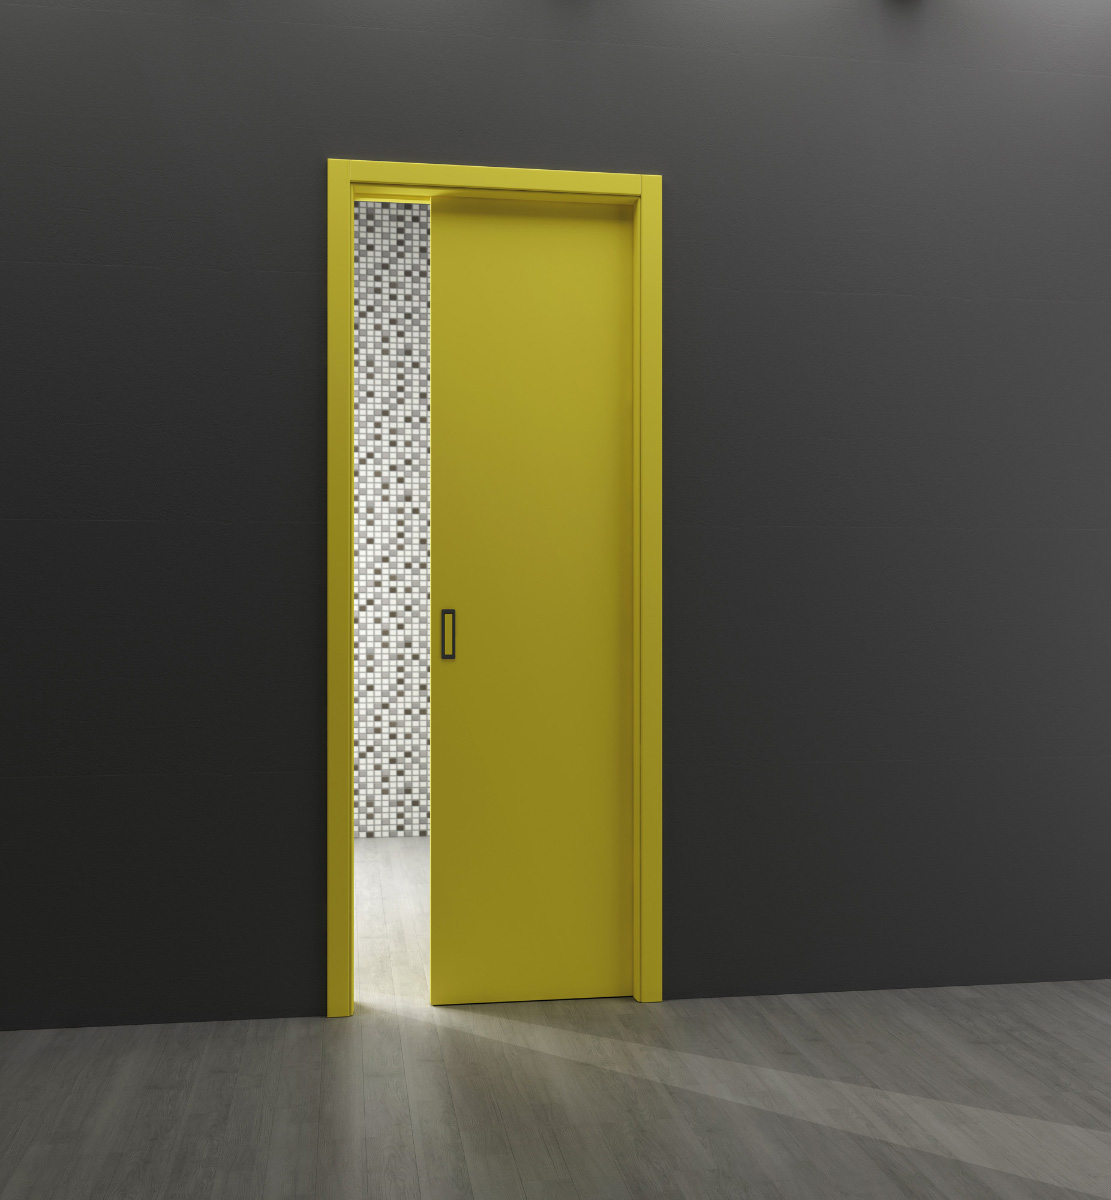 Posuvné dvere Millenium v žltom matnom laku z kolekcie HANÁK.